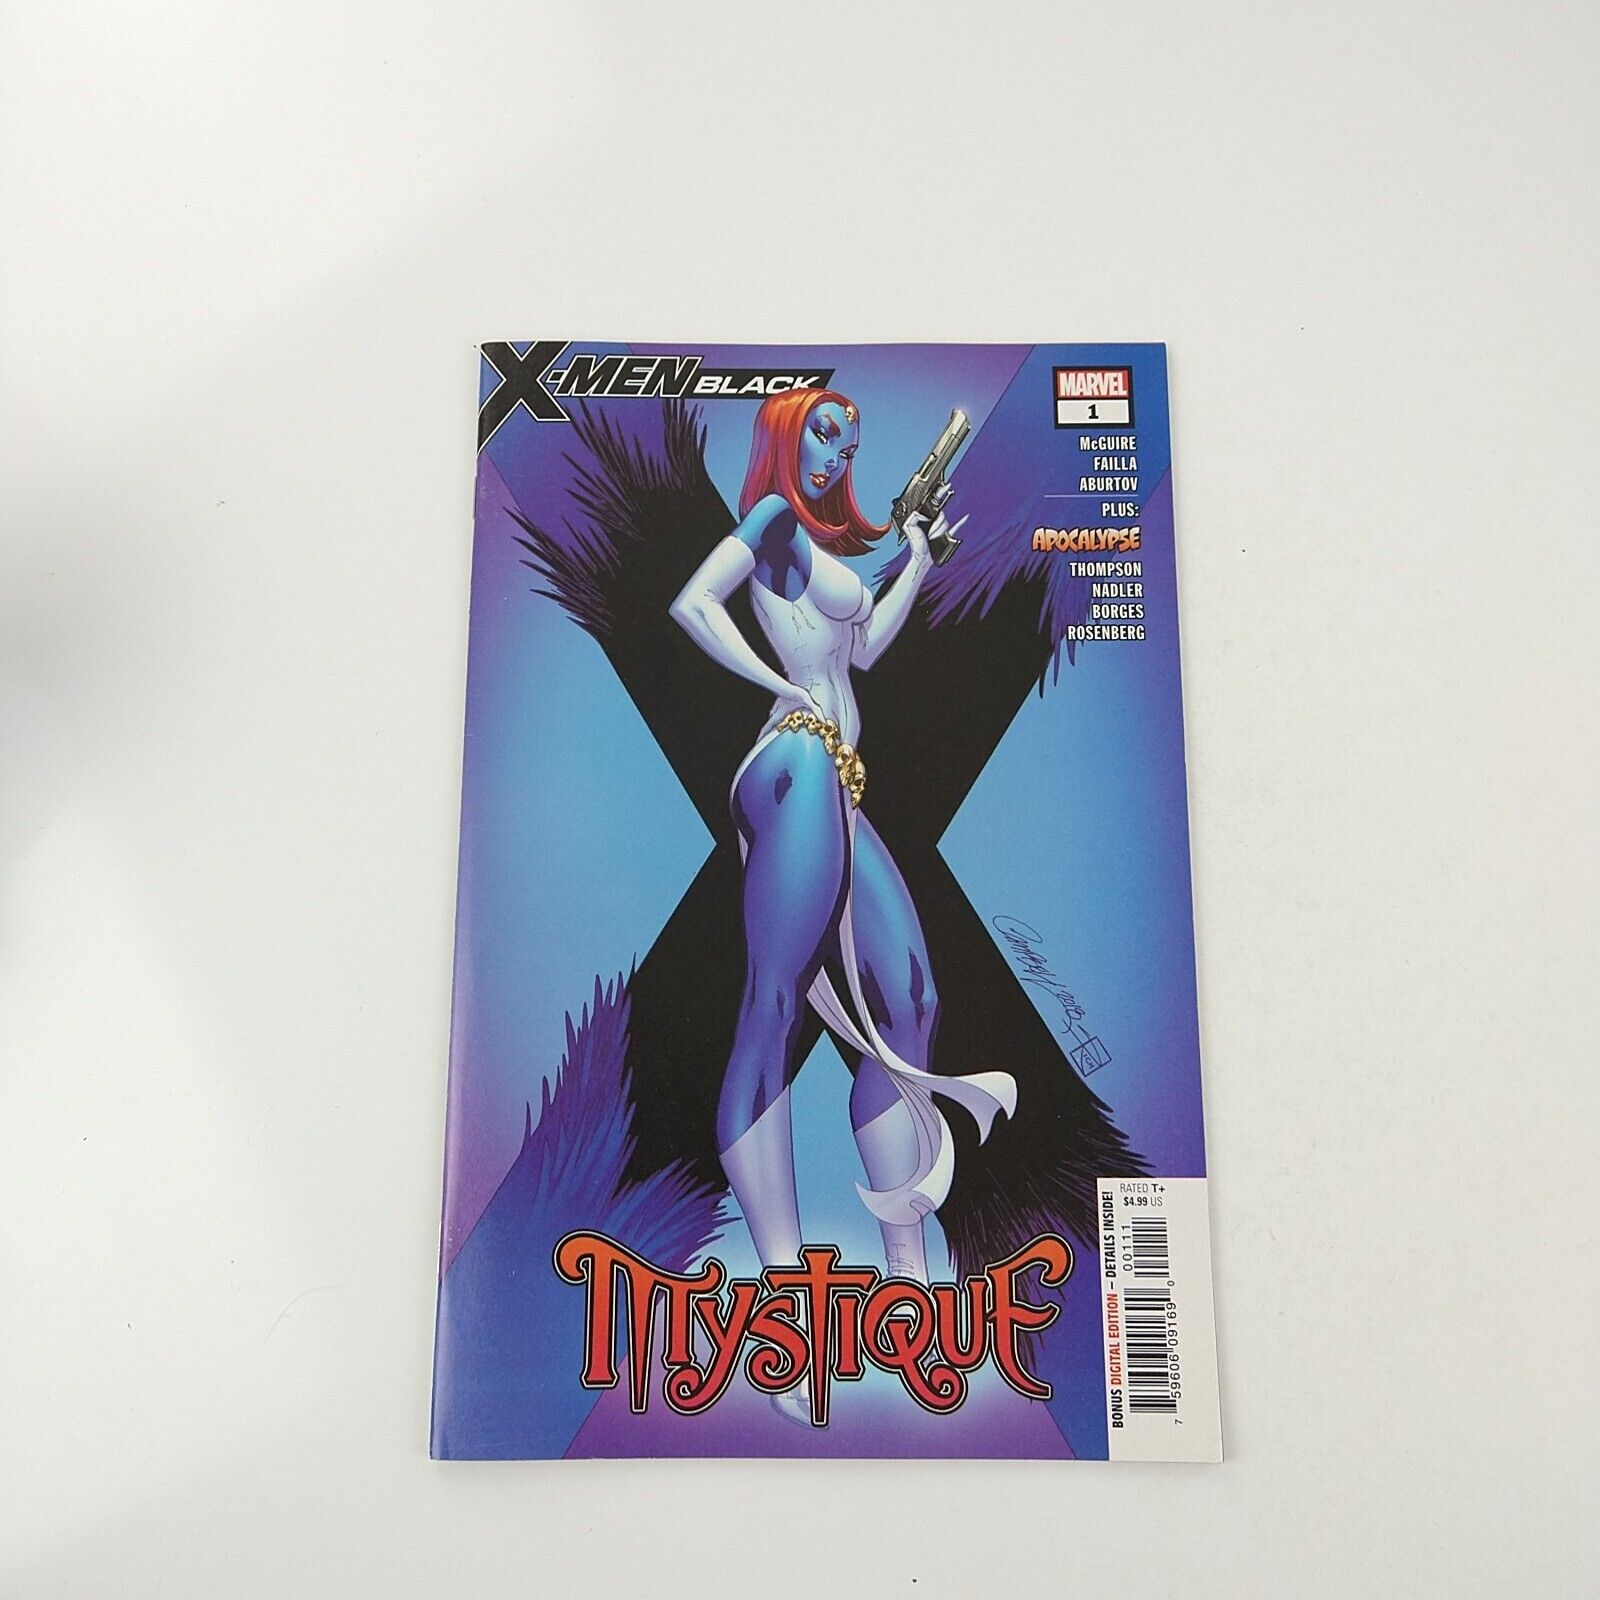 X-Men Black: Mystique #1 J Scott Campbell Cover (2018 Marvel Comics)